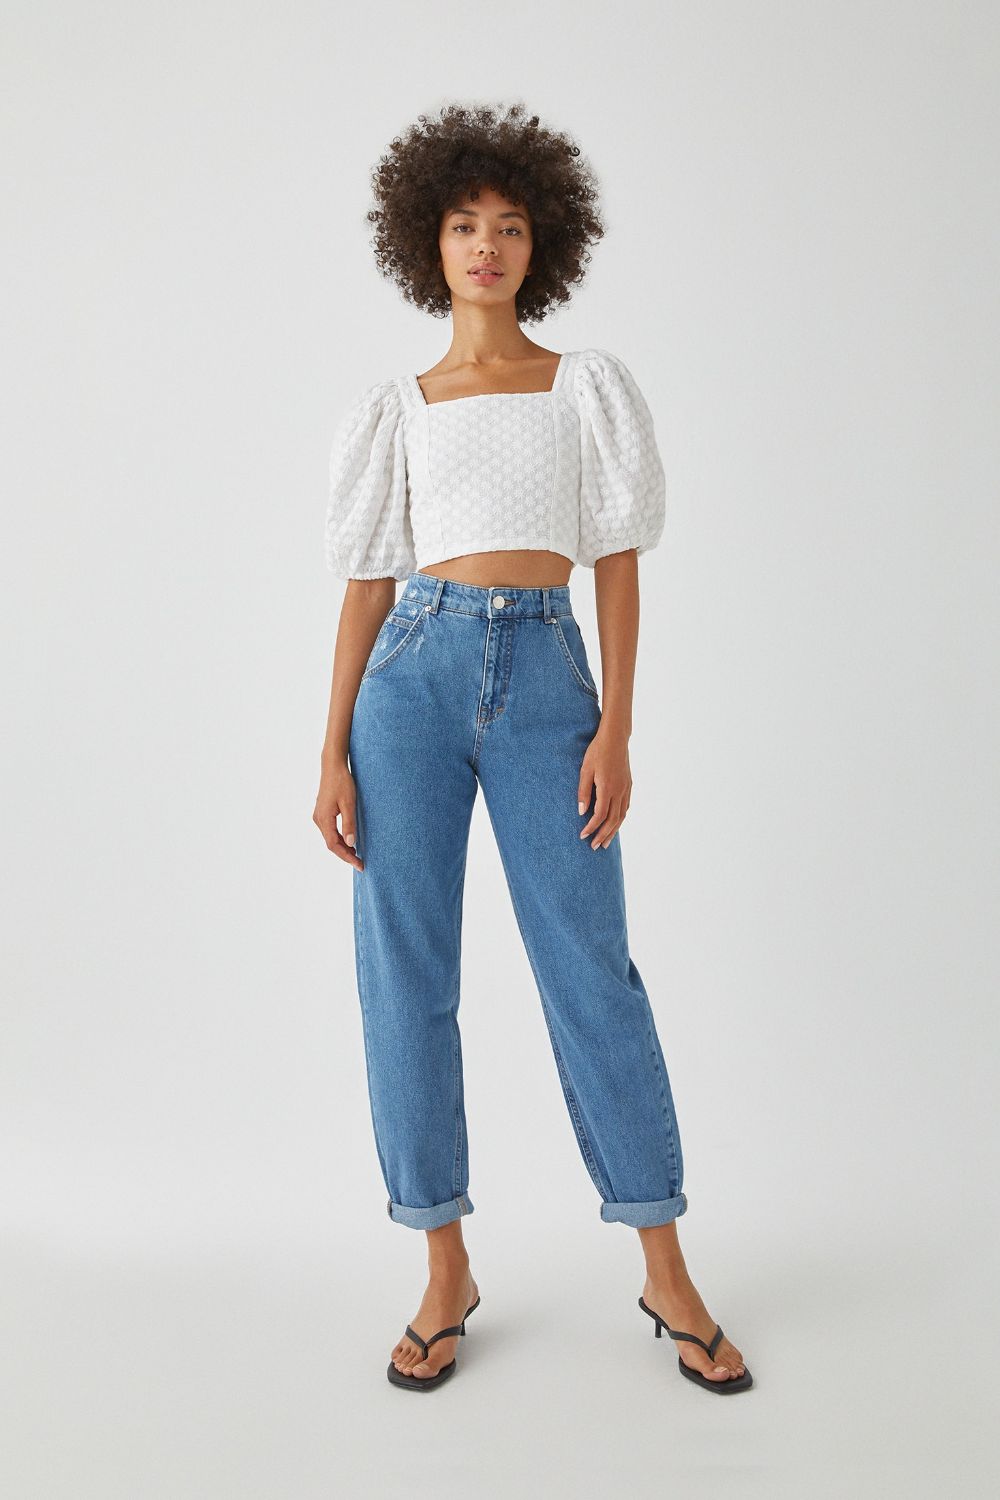 Slouchy jeans jesen 2020